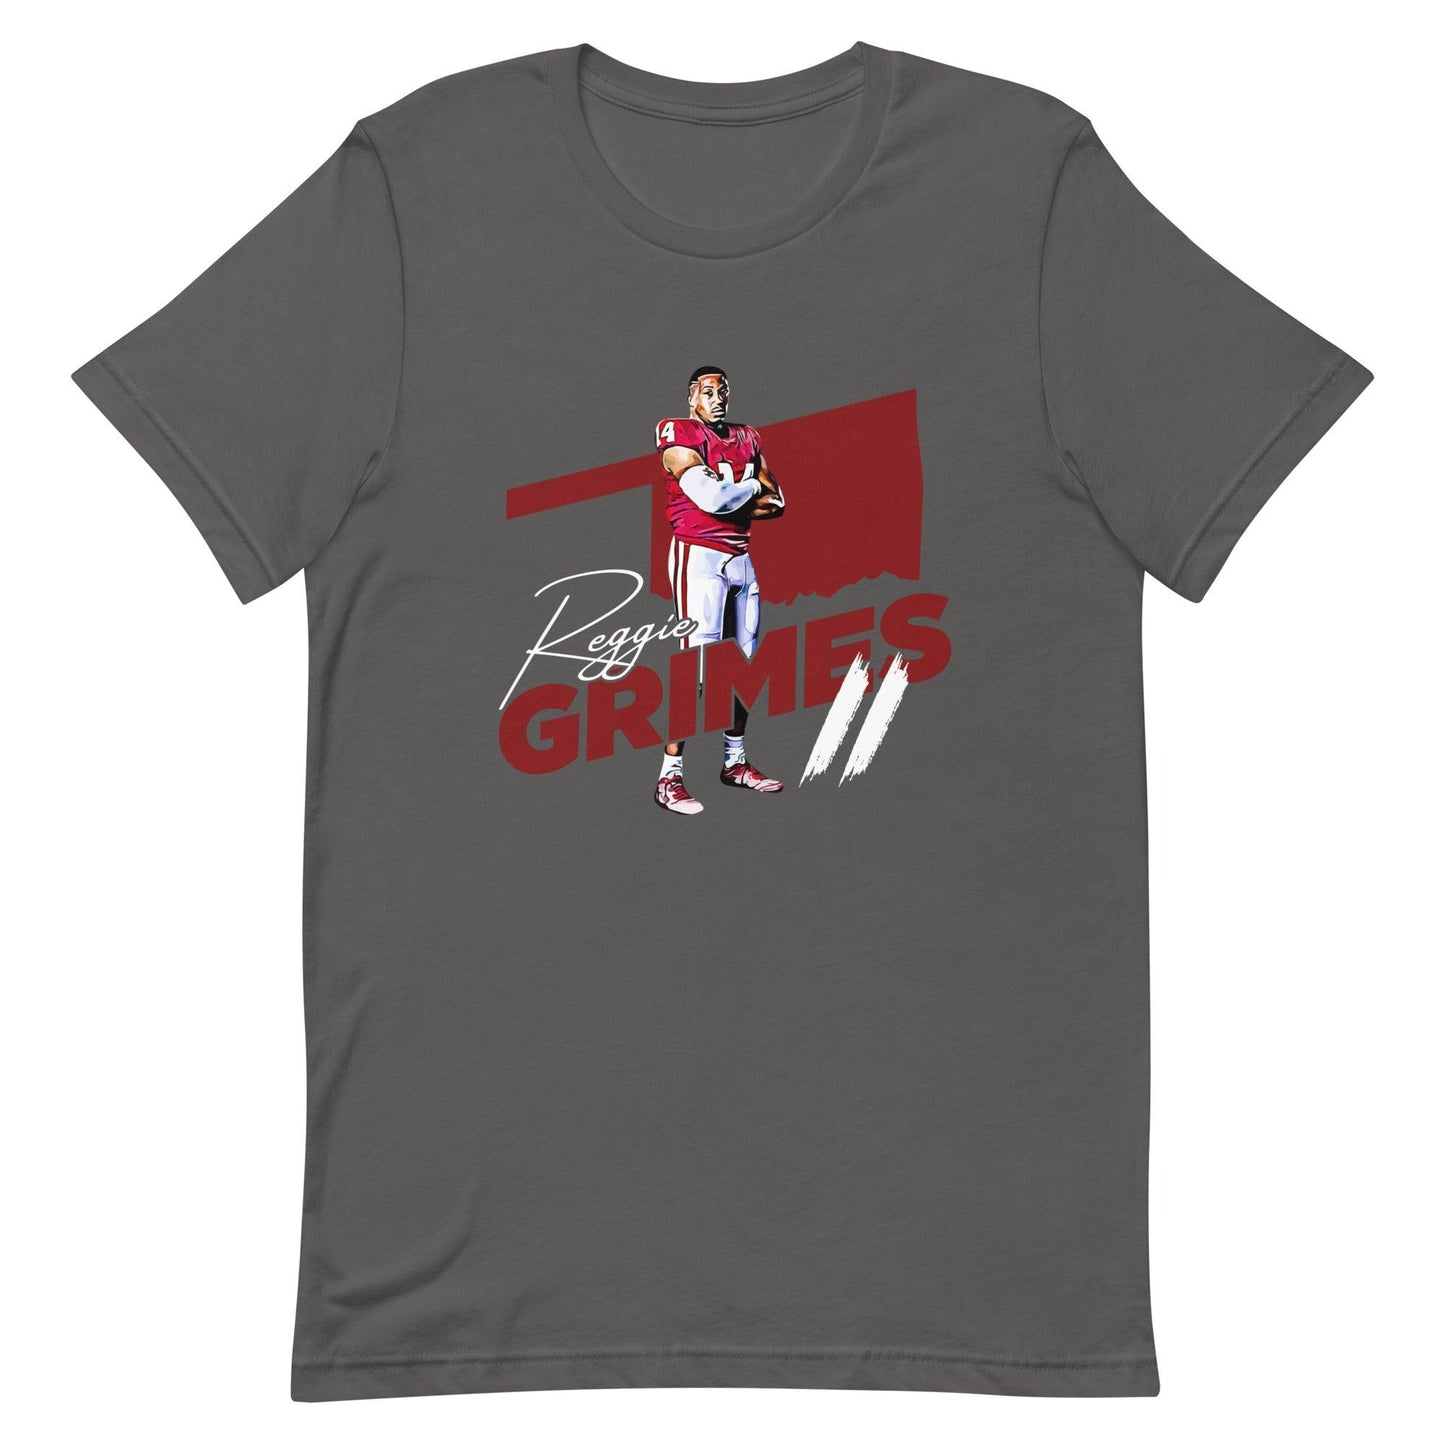 Reggie Grimes II "OKL" t-shirt - Fan Arch